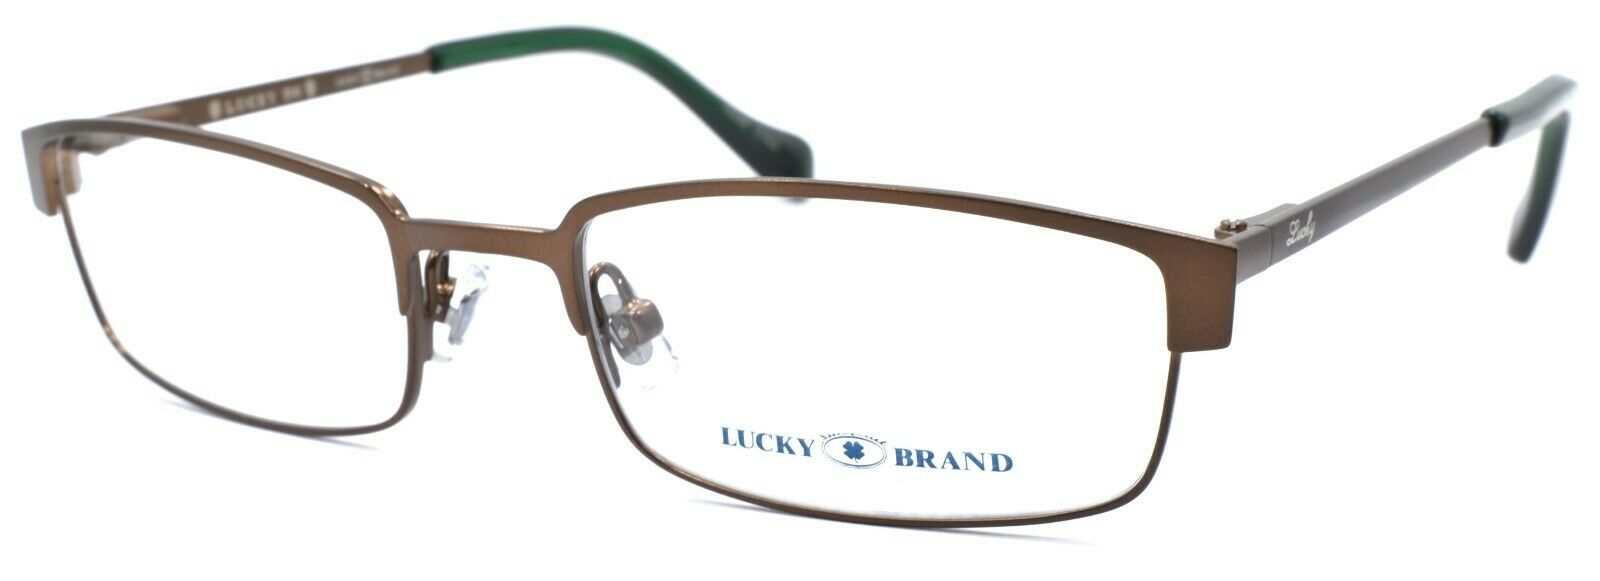 1-LUCKY BRAND Break Time Kids Unisex Eyeglasses Frames 48-17-130 Brown + CASE-751286215601-IKSpecs